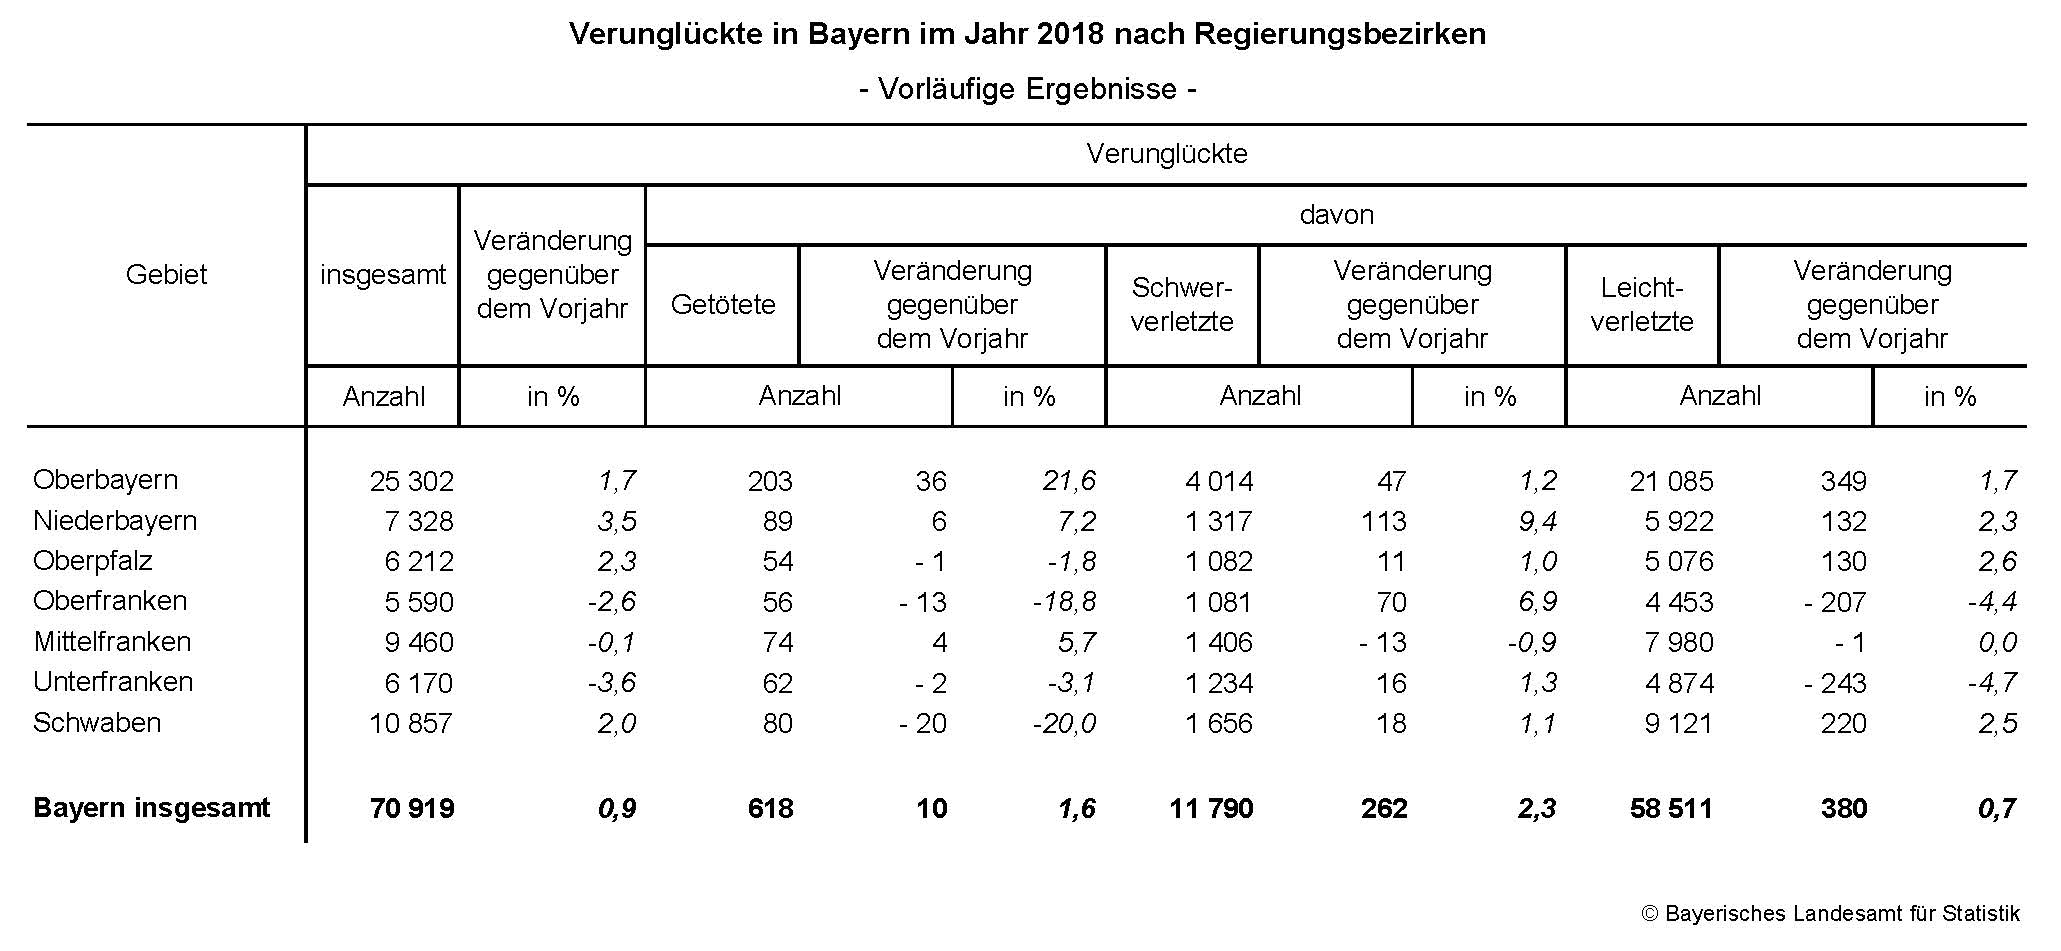 Verunglückte in Bayern im Jahr 2018 nach Regierungsbezirken